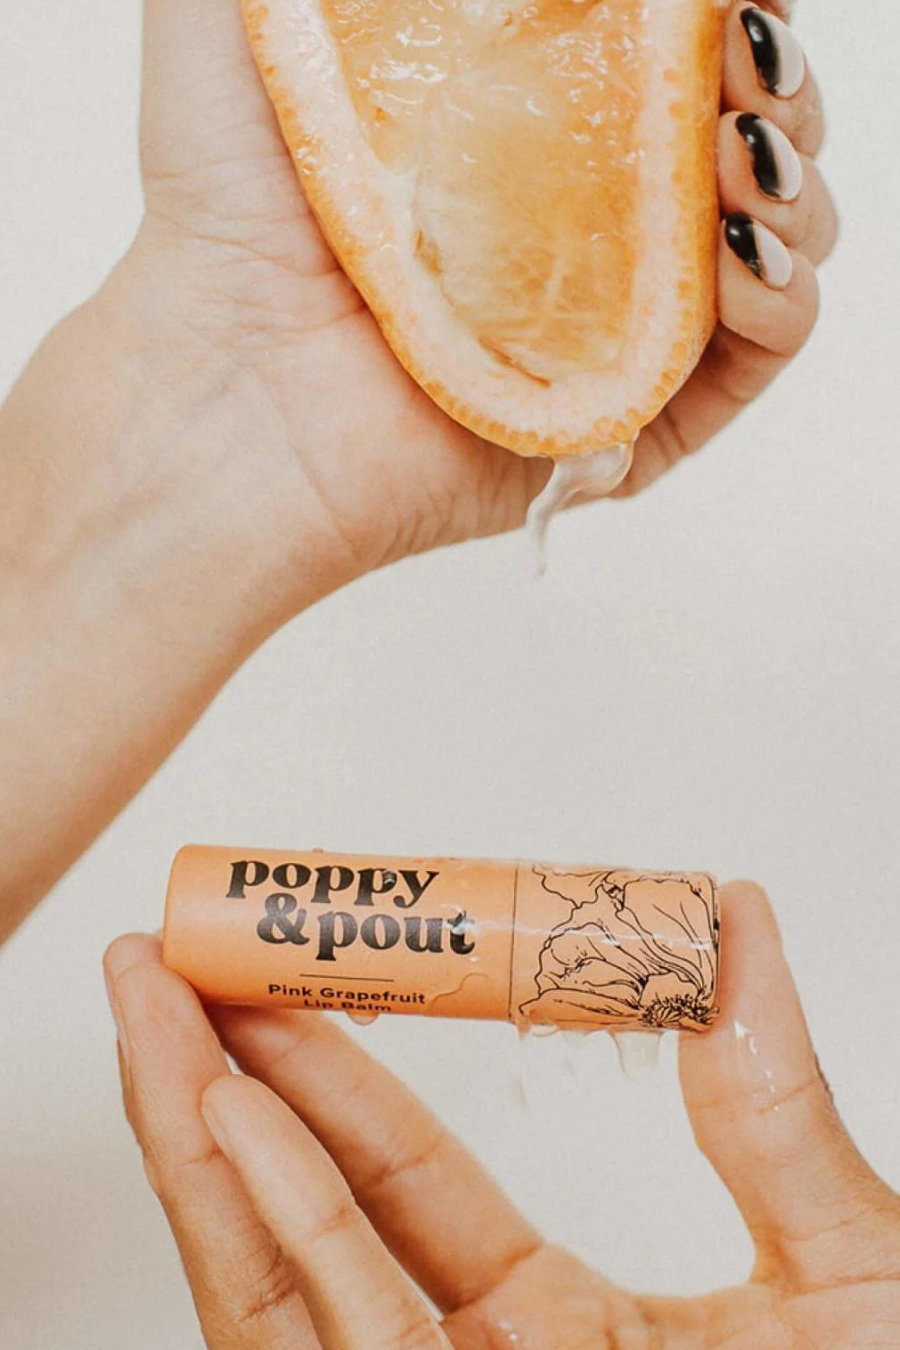 POPPY + POUT Pink Grapefruit Lip Balm